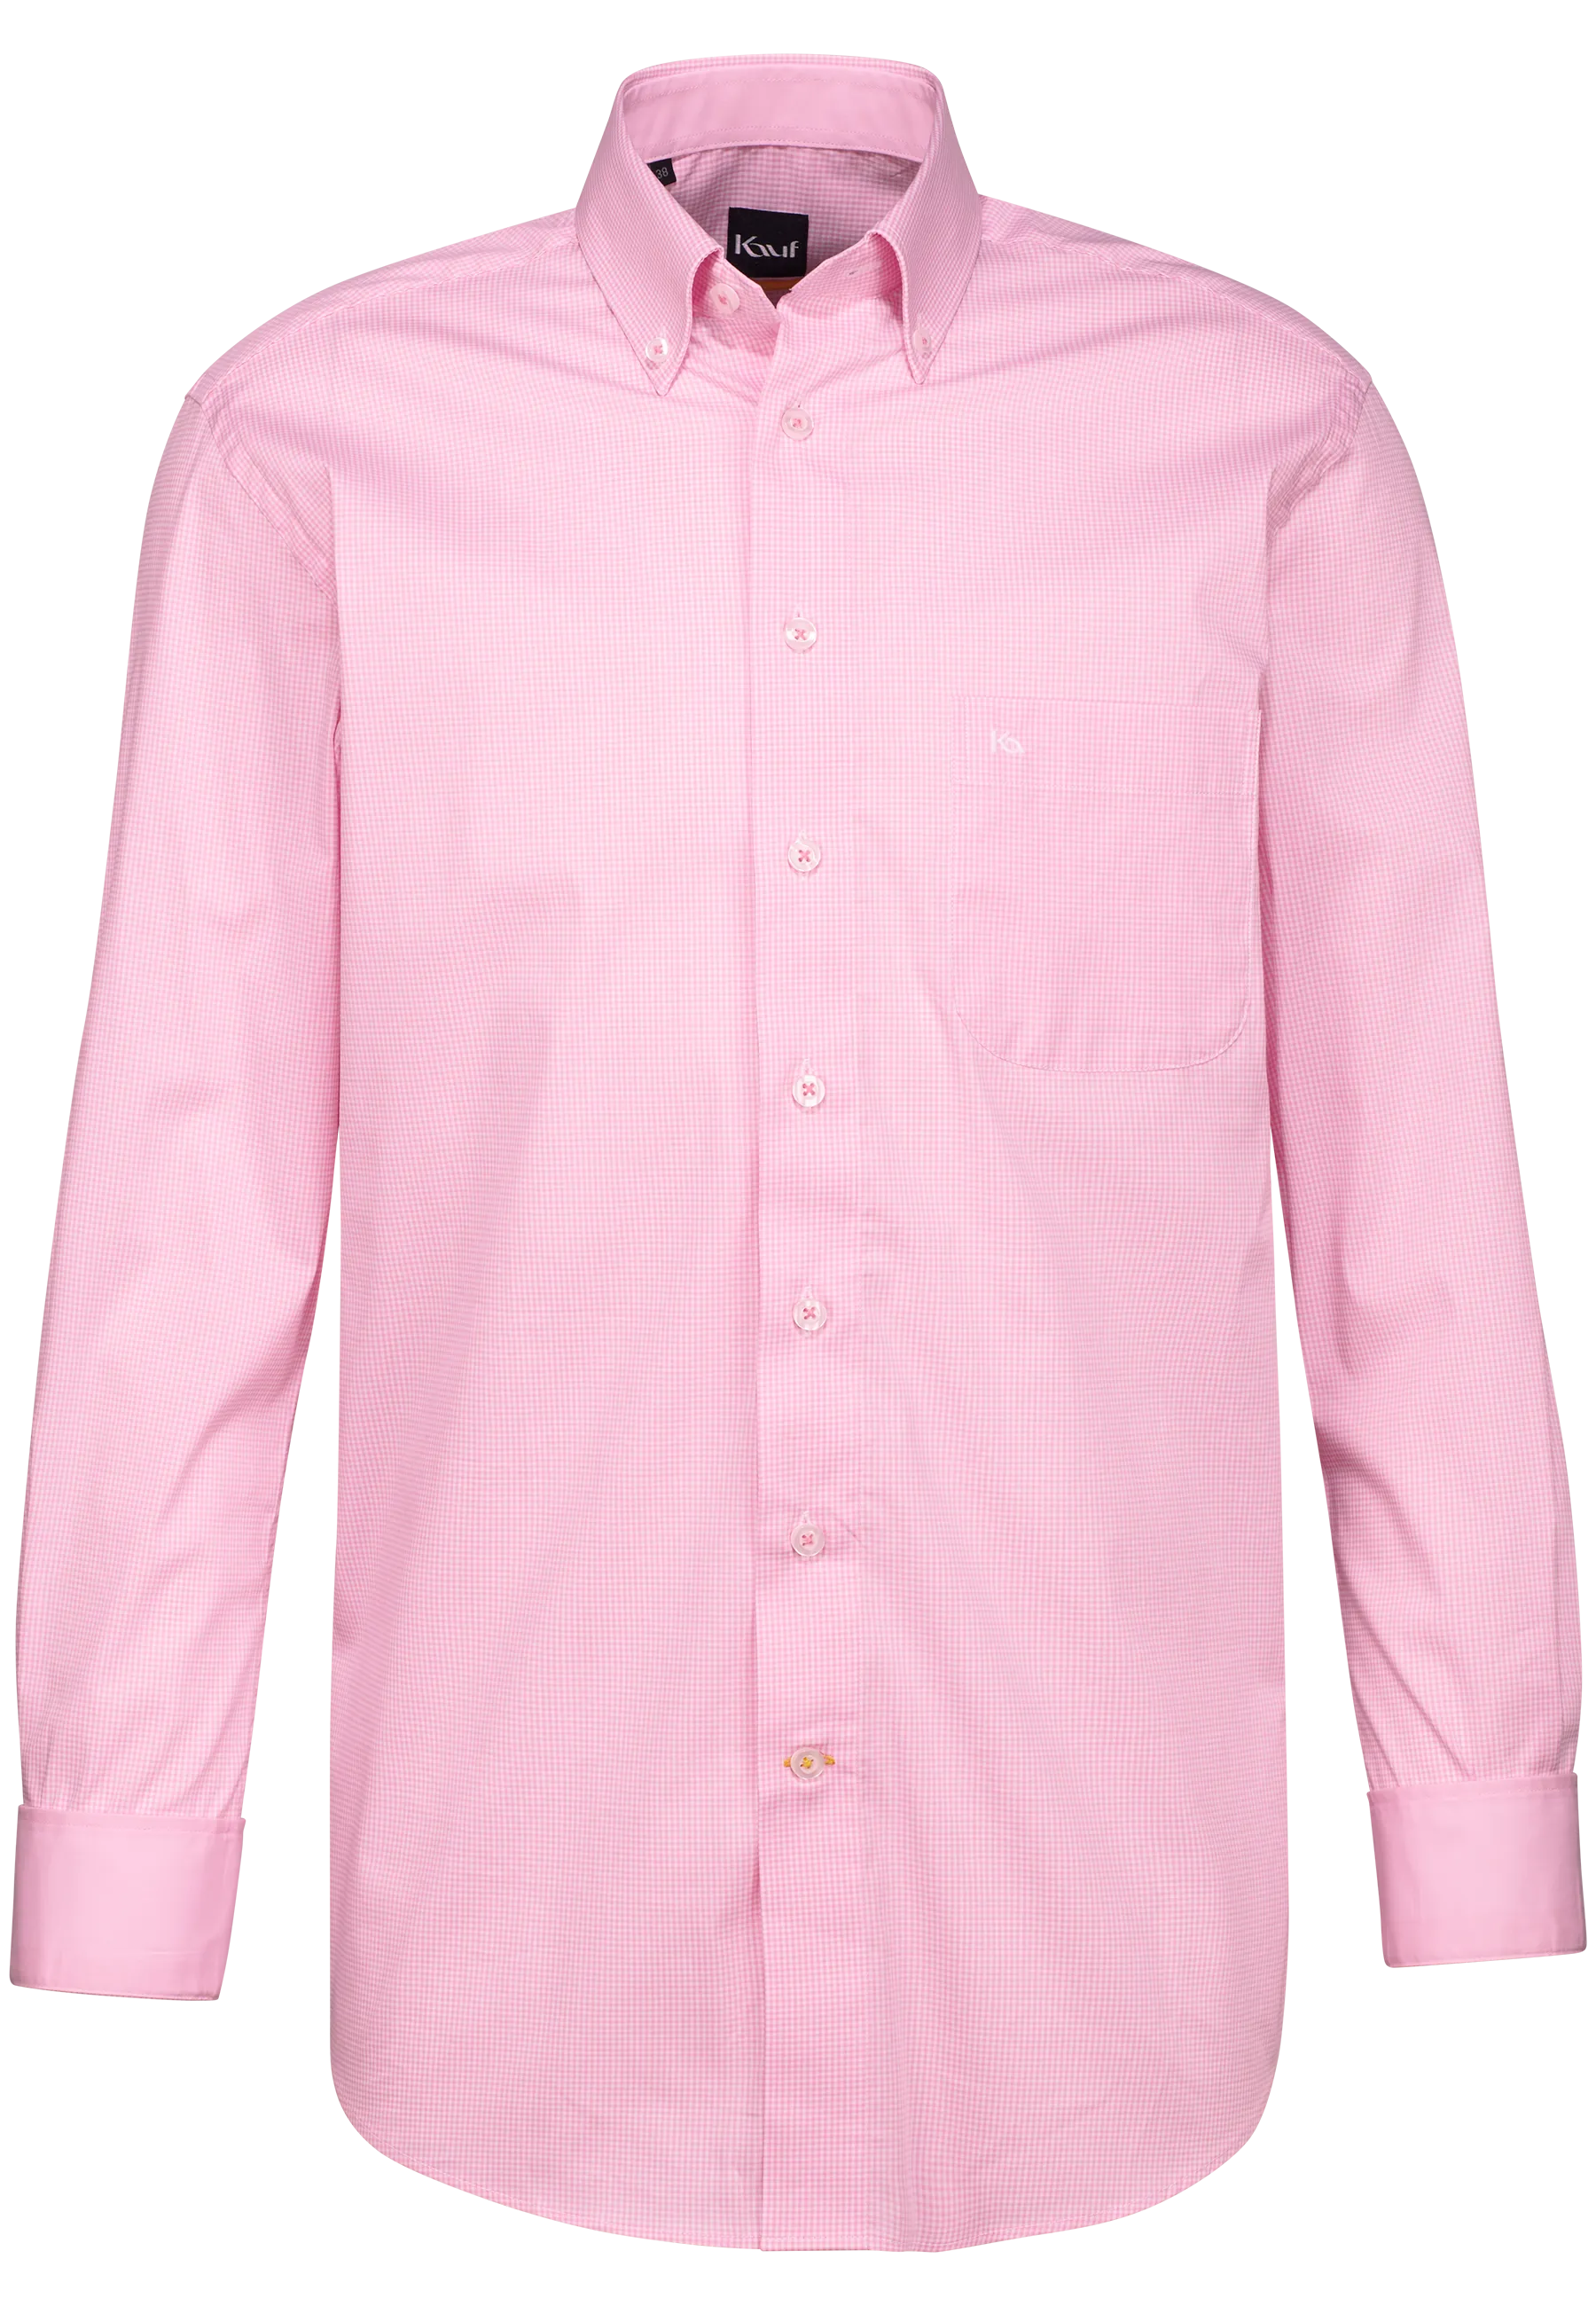 hemd rosa gemustert